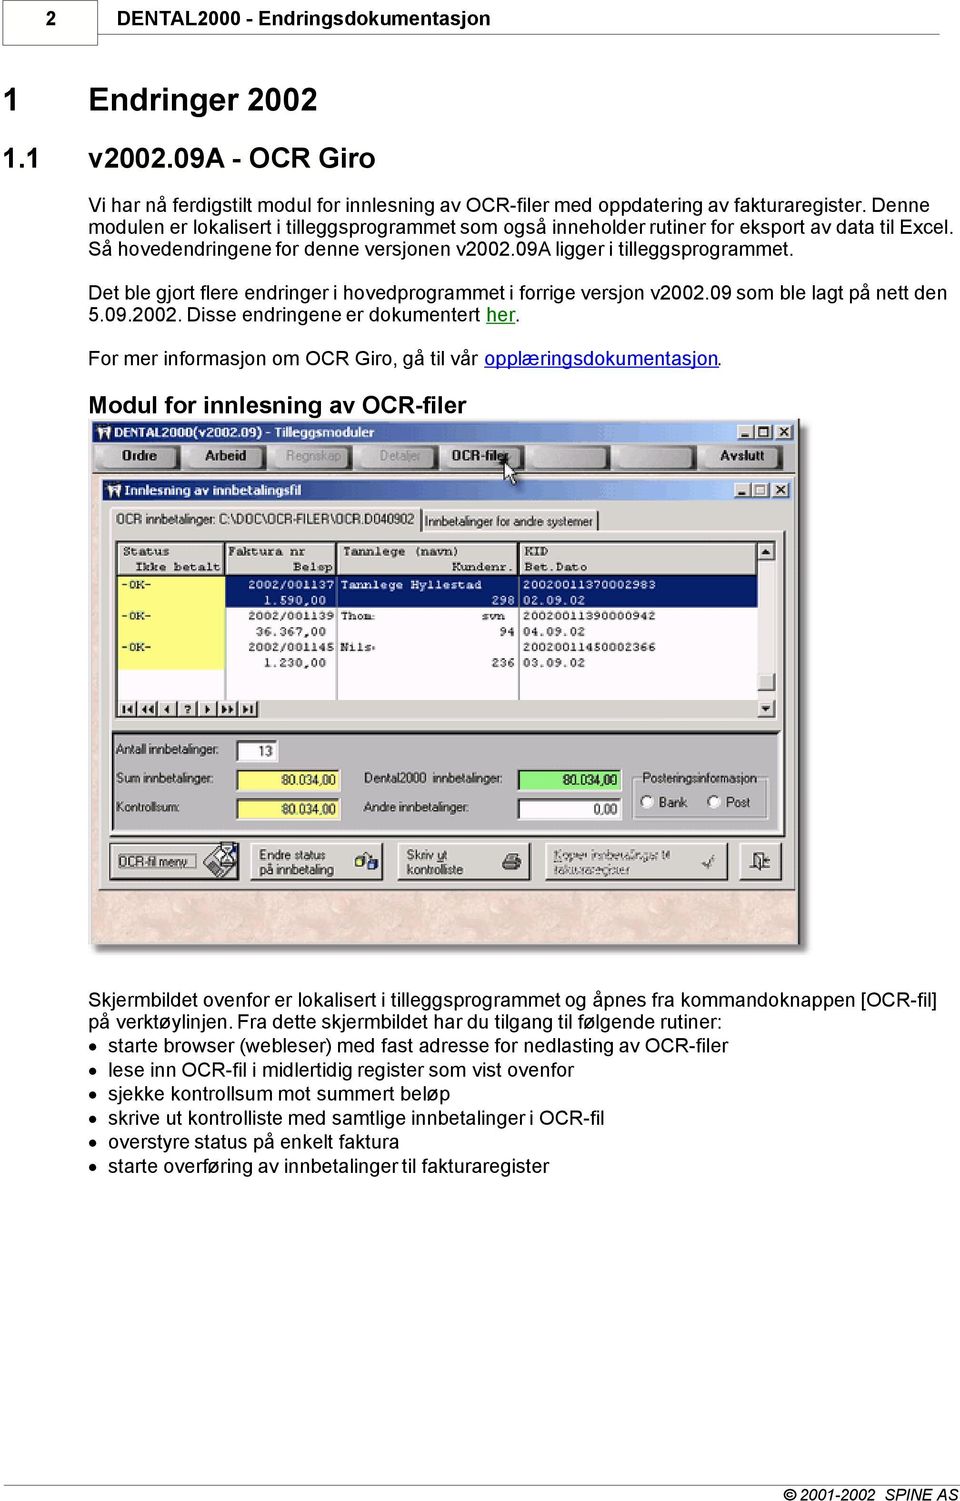 Det ble gjort flere endringer i hovedprogrammet i forrige versjon v2002.09 som ble lagt på nett den 5.09.2002. Disse endringene er dokumentert her.